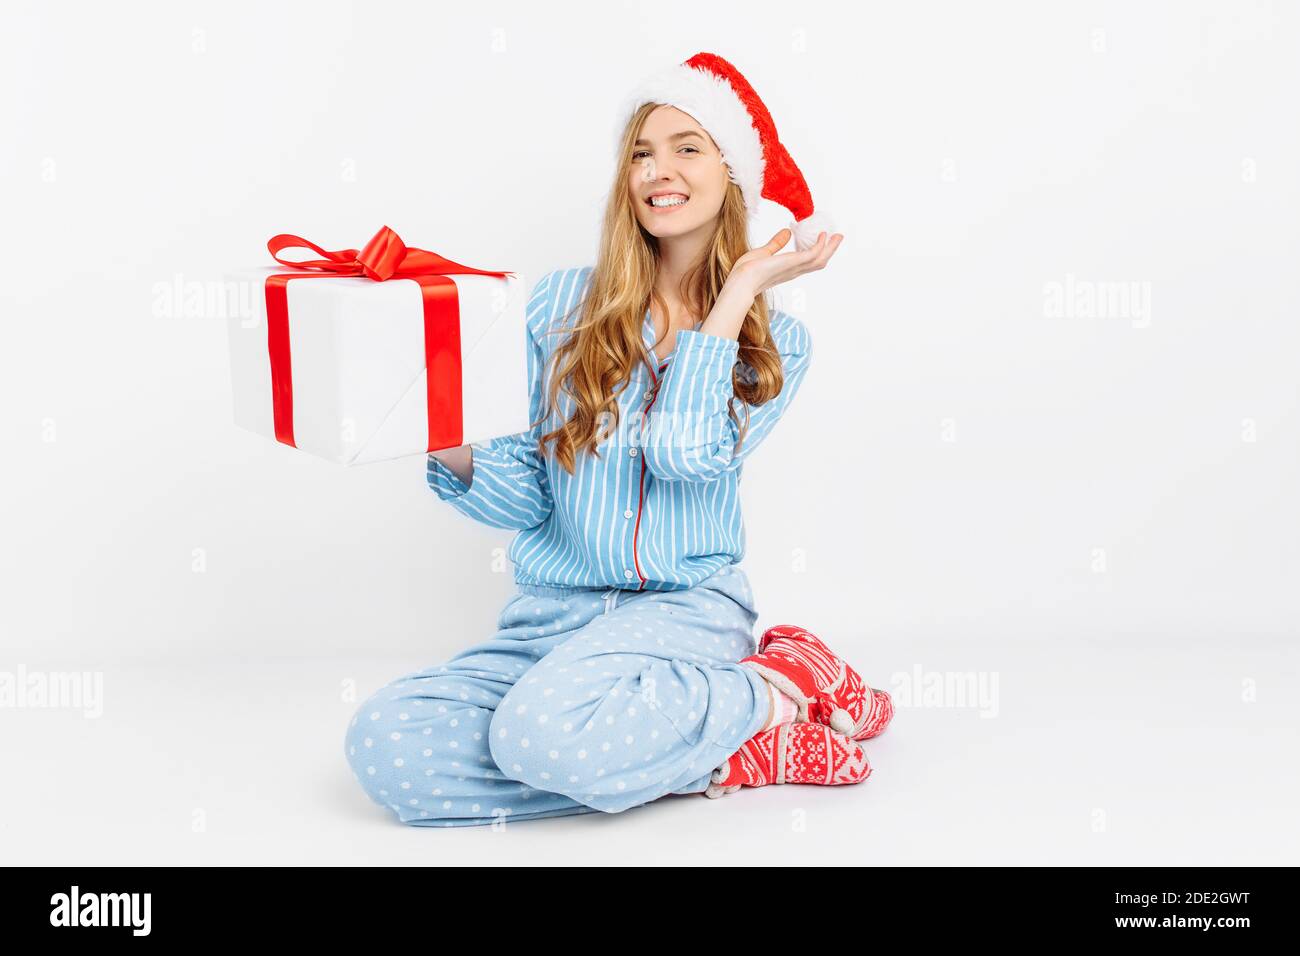 Weihnachtsmorgen. Happy schöne junge Mädchen, in Weihnachten Pyjamas und Weihnachtsmütze, öffnet Weihnachtsgeschenk, auf weißem Hintergrund Stockfoto